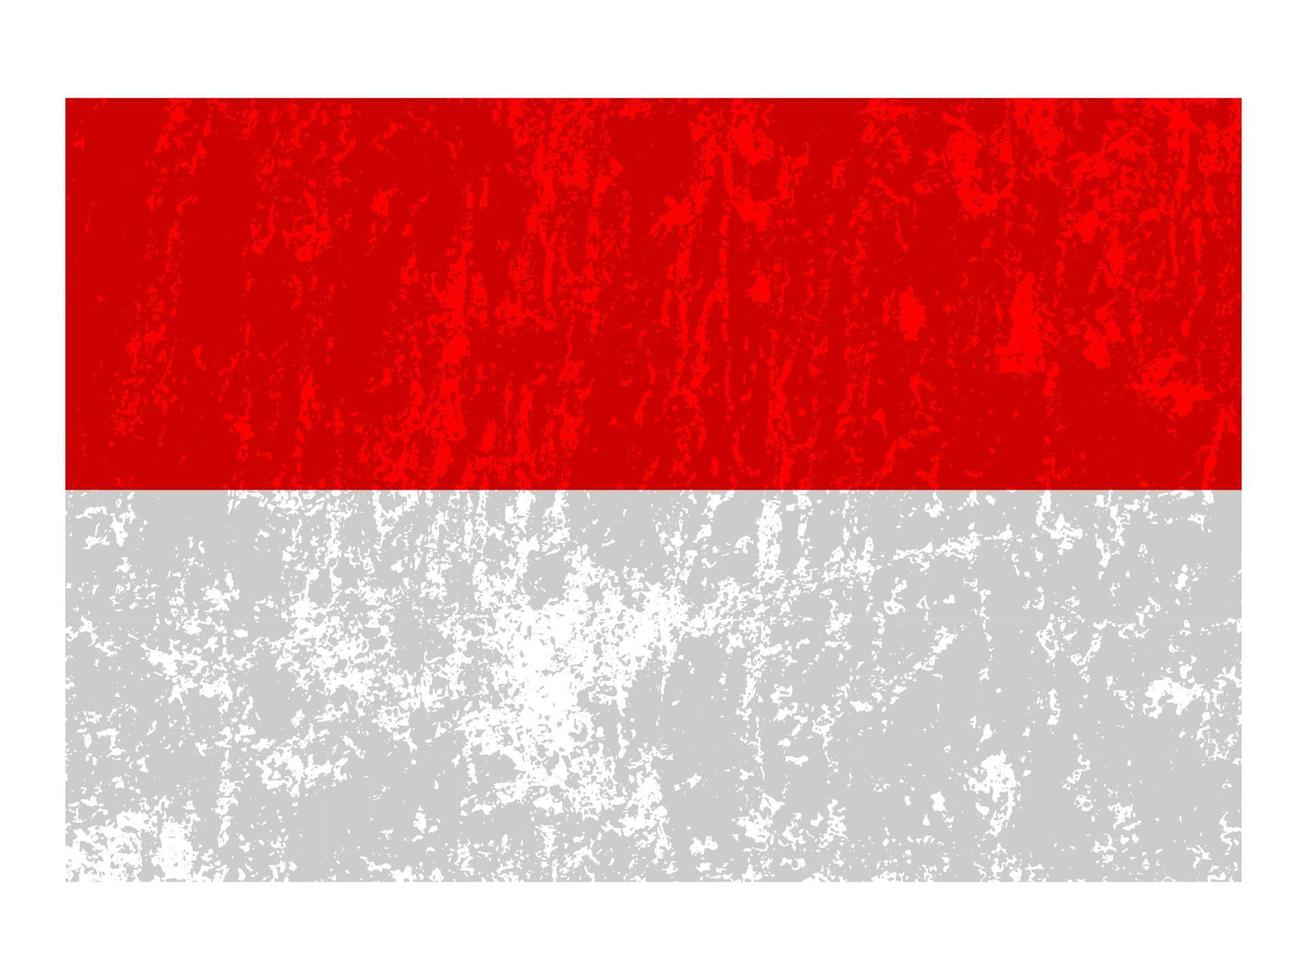 Indonesië grunge vlag, officieel kleuren en proportie. vector illustratie.